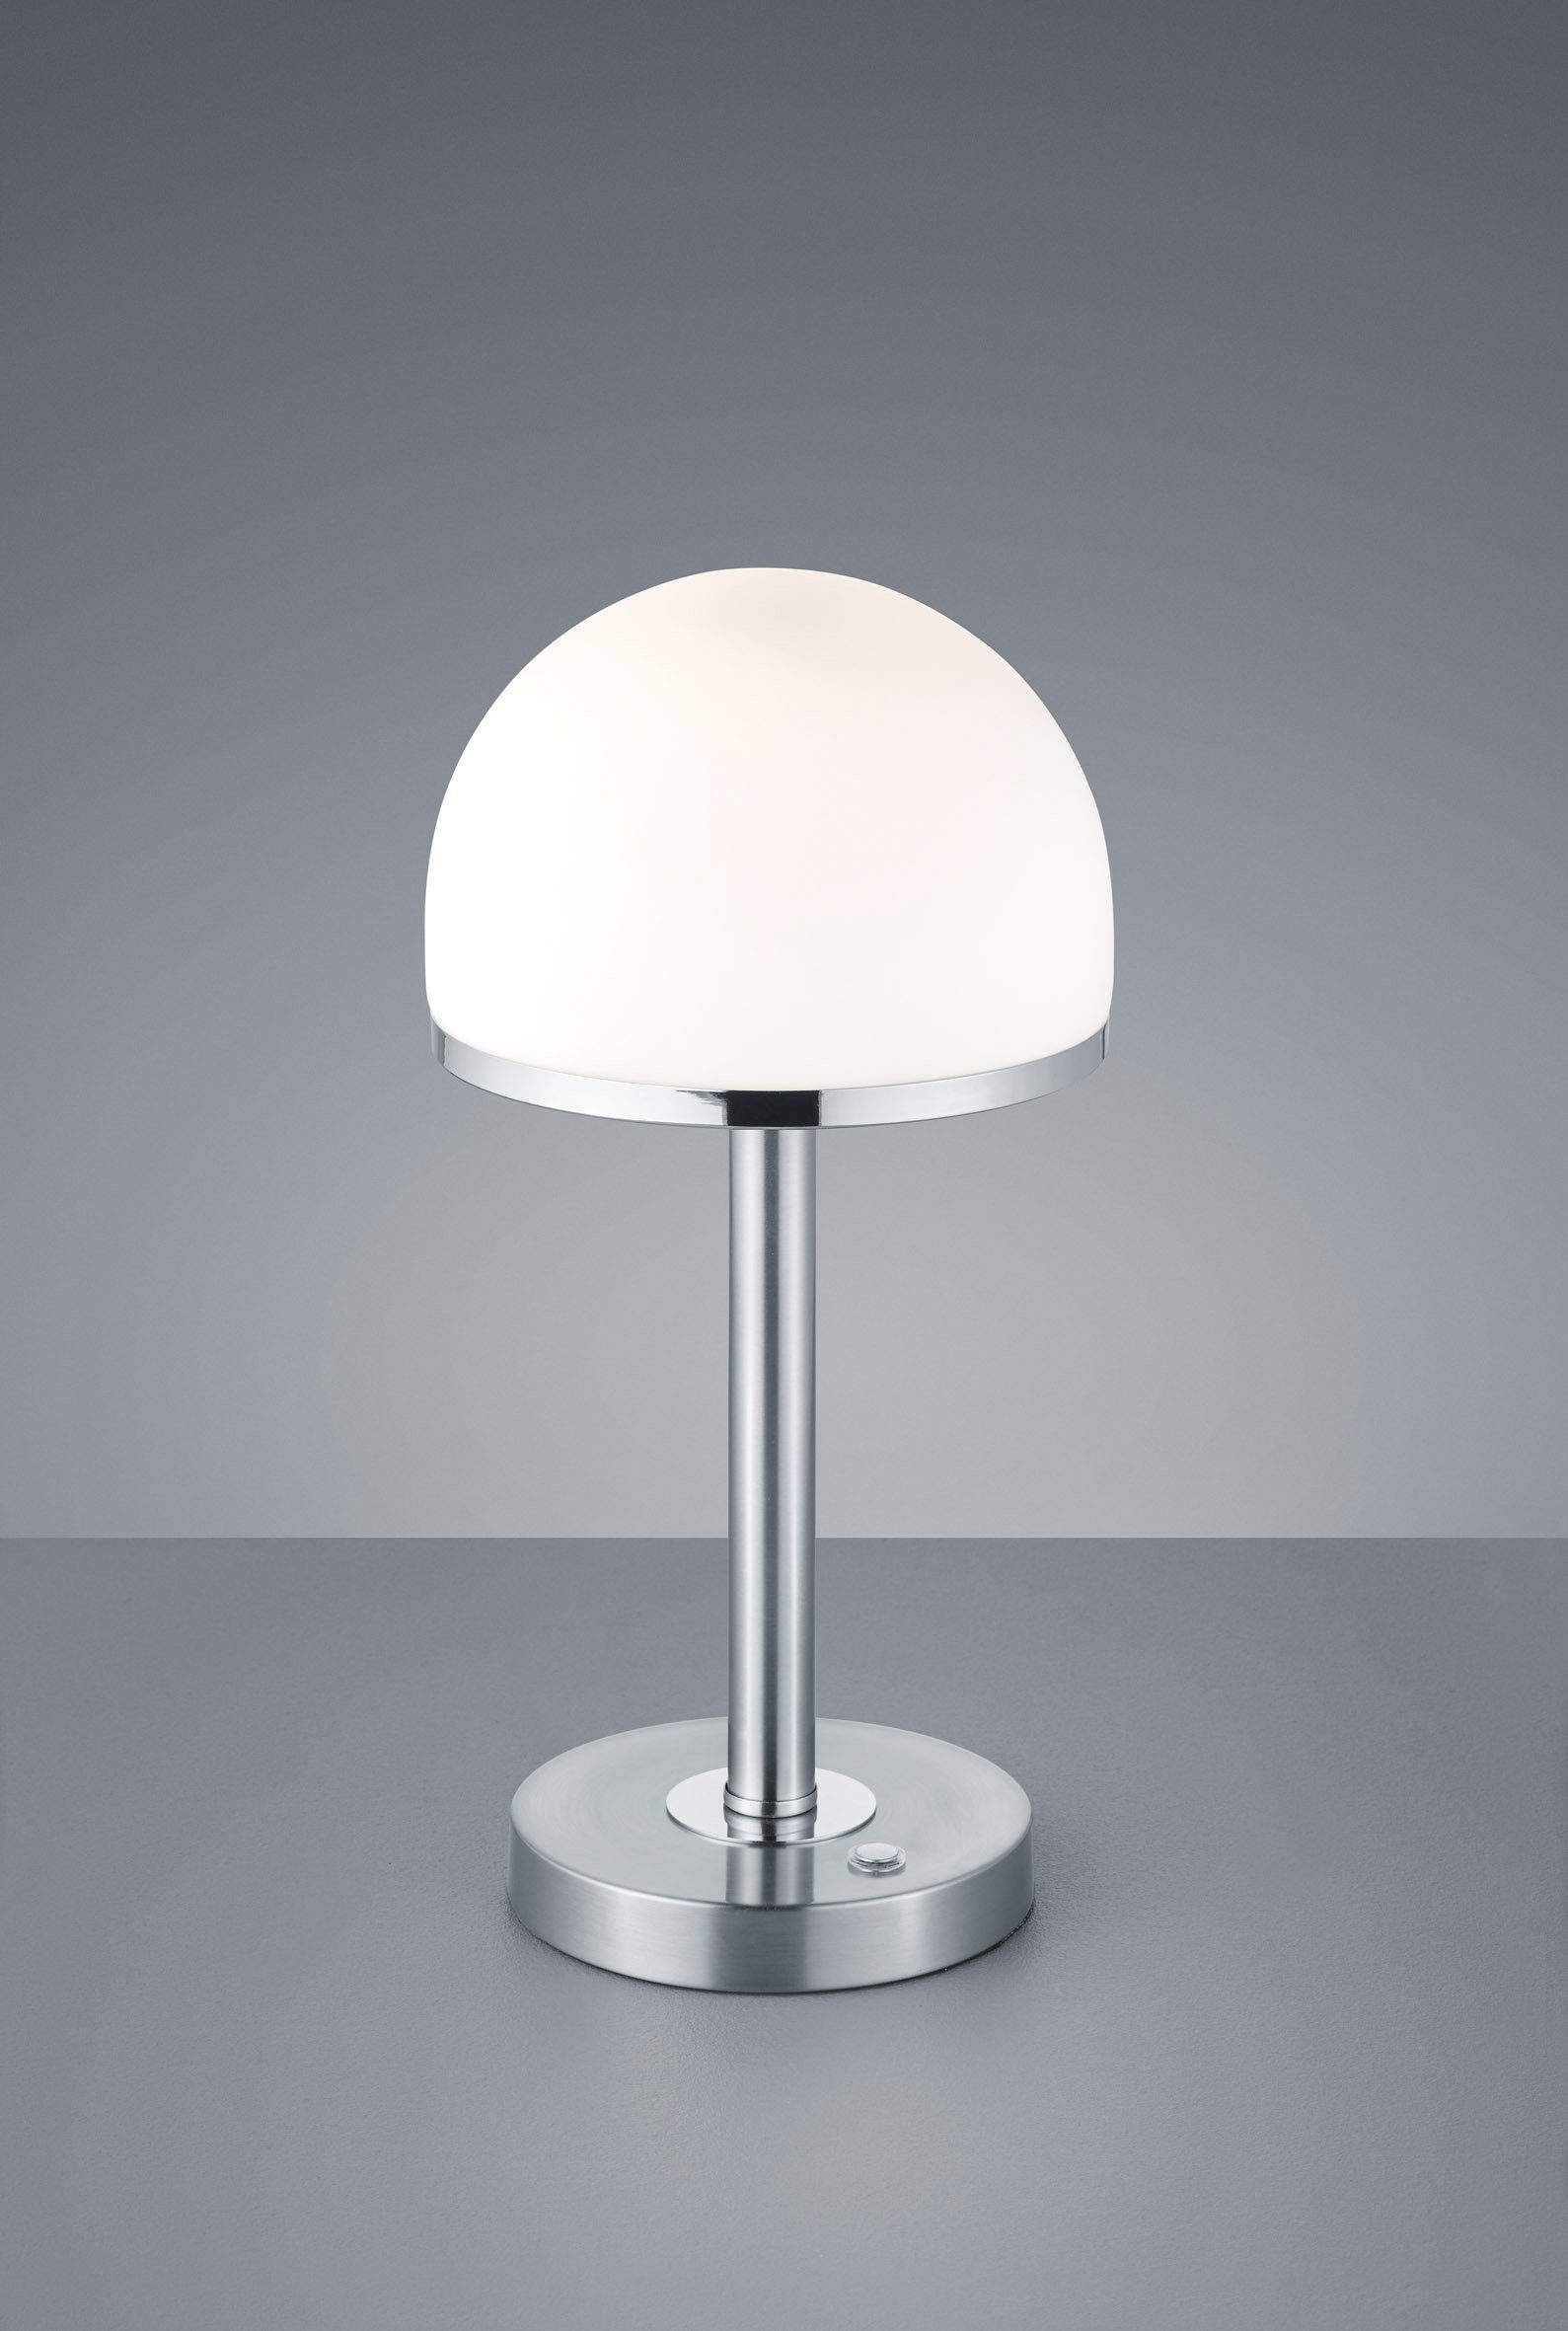 Tischleuchte LED 4 TOUCH-Dimmer LED fach integriert, fest mit Design Berlin, TRIO Tischlampe in Dimmfunktion, Warmweiß, modernem Leuchten